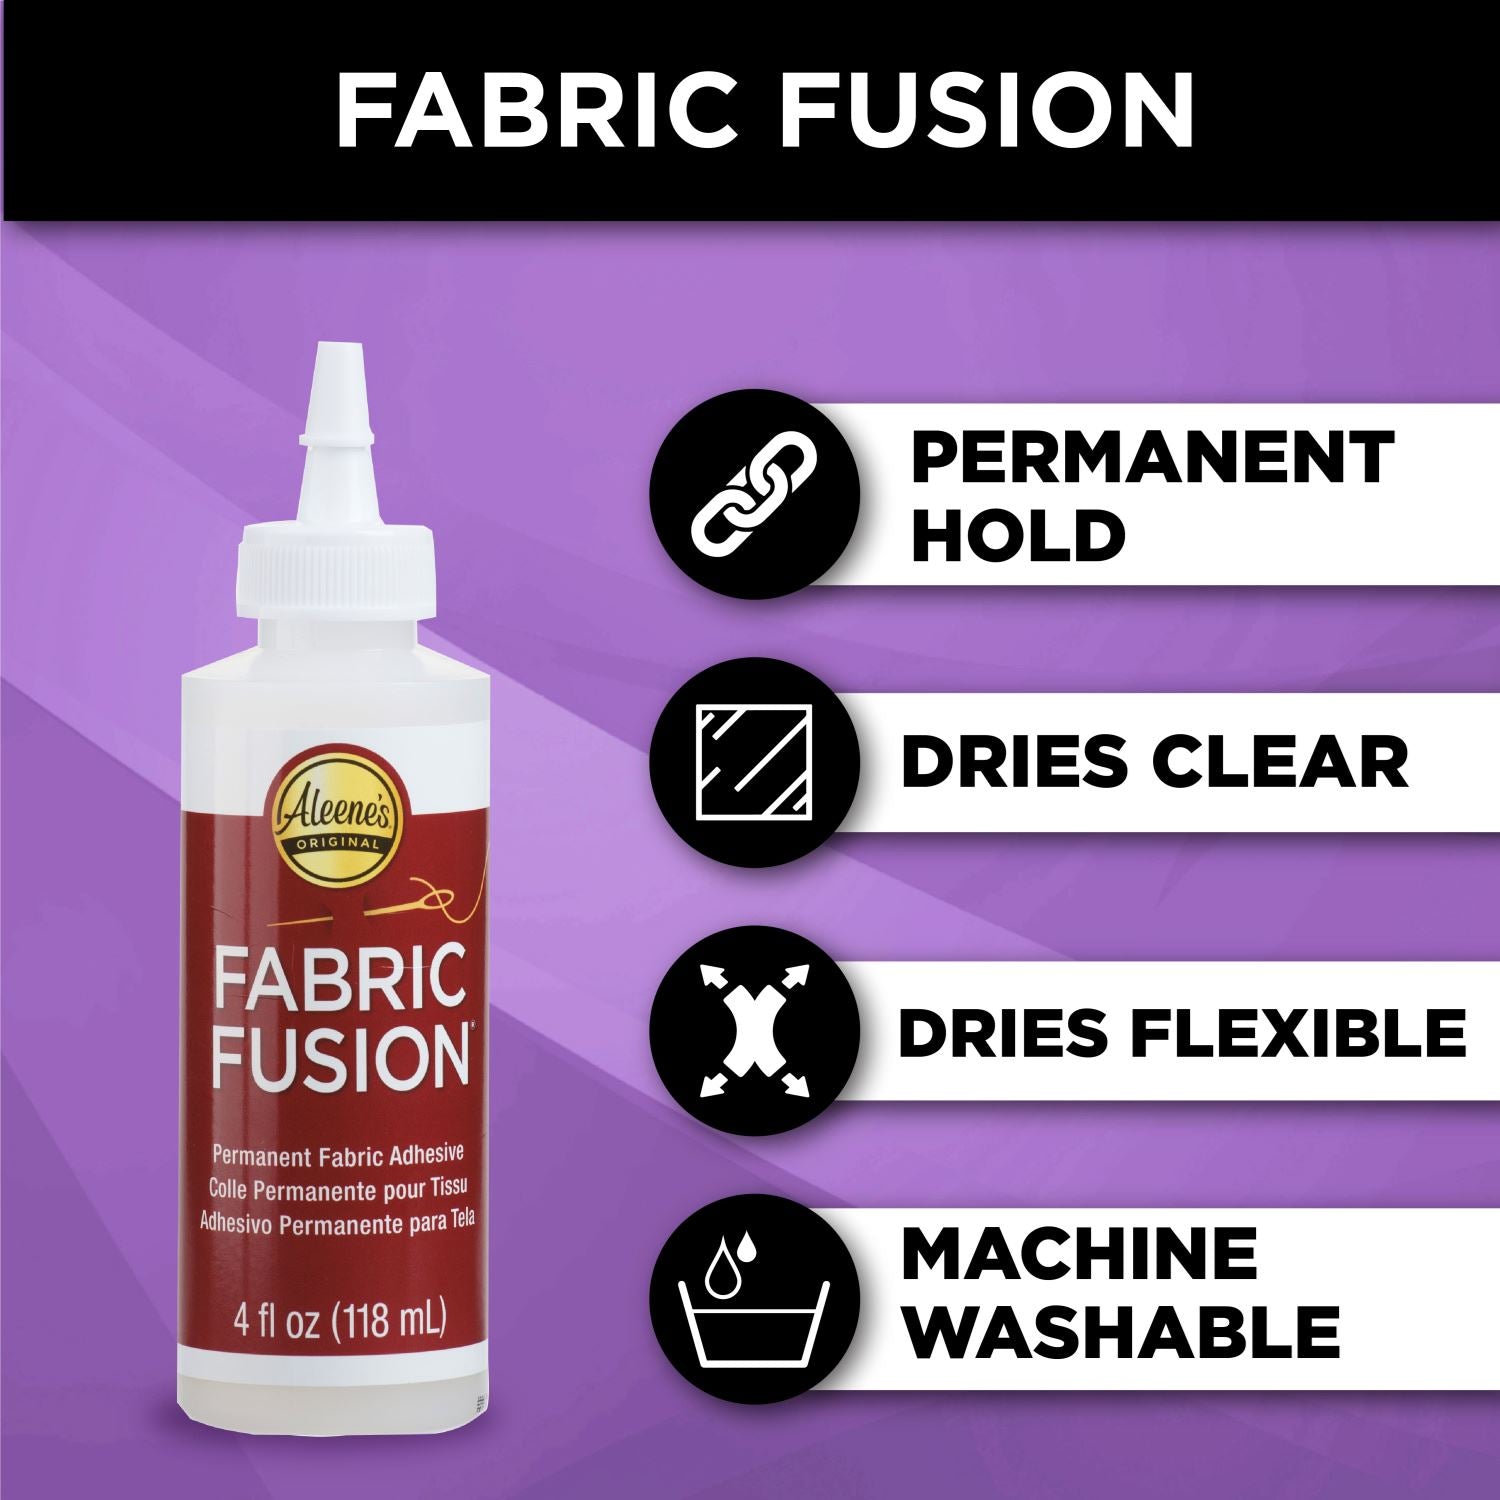 Fabric Fusion Spray Pump Glue / Pegamento para Textiles y Adornos